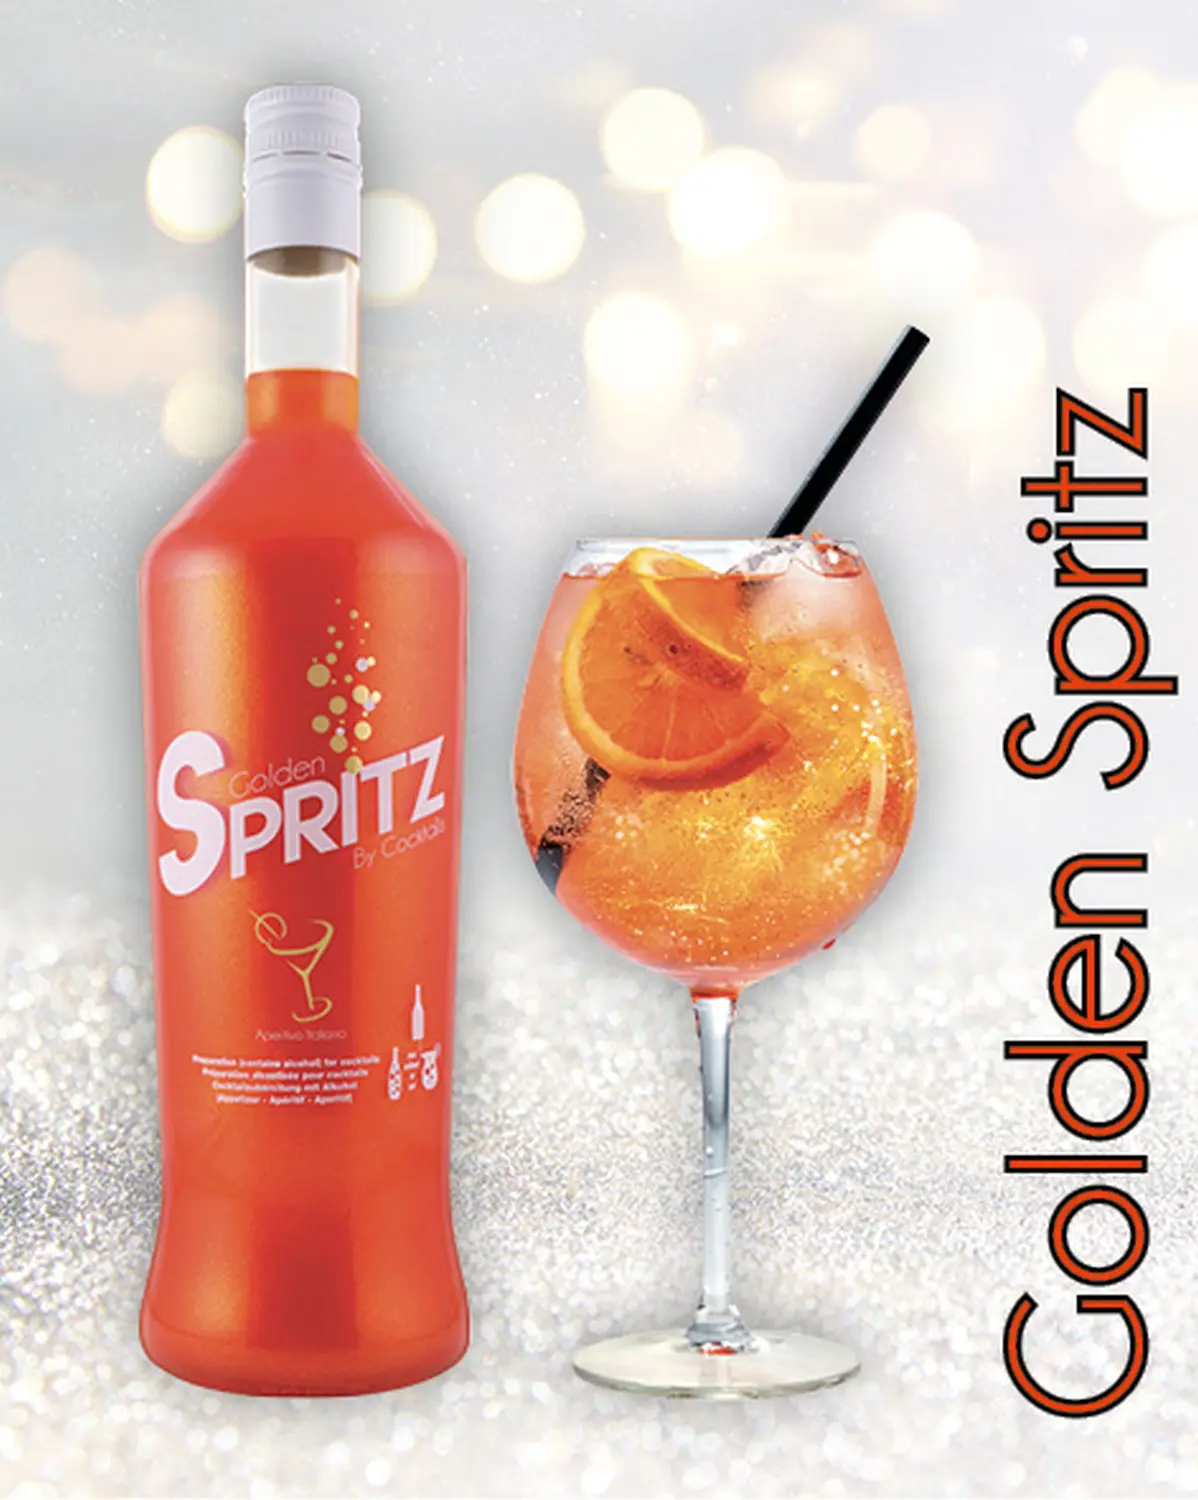 Golden Spriitz Cocktail mit Alkohol von COCKTALIS Deutschland